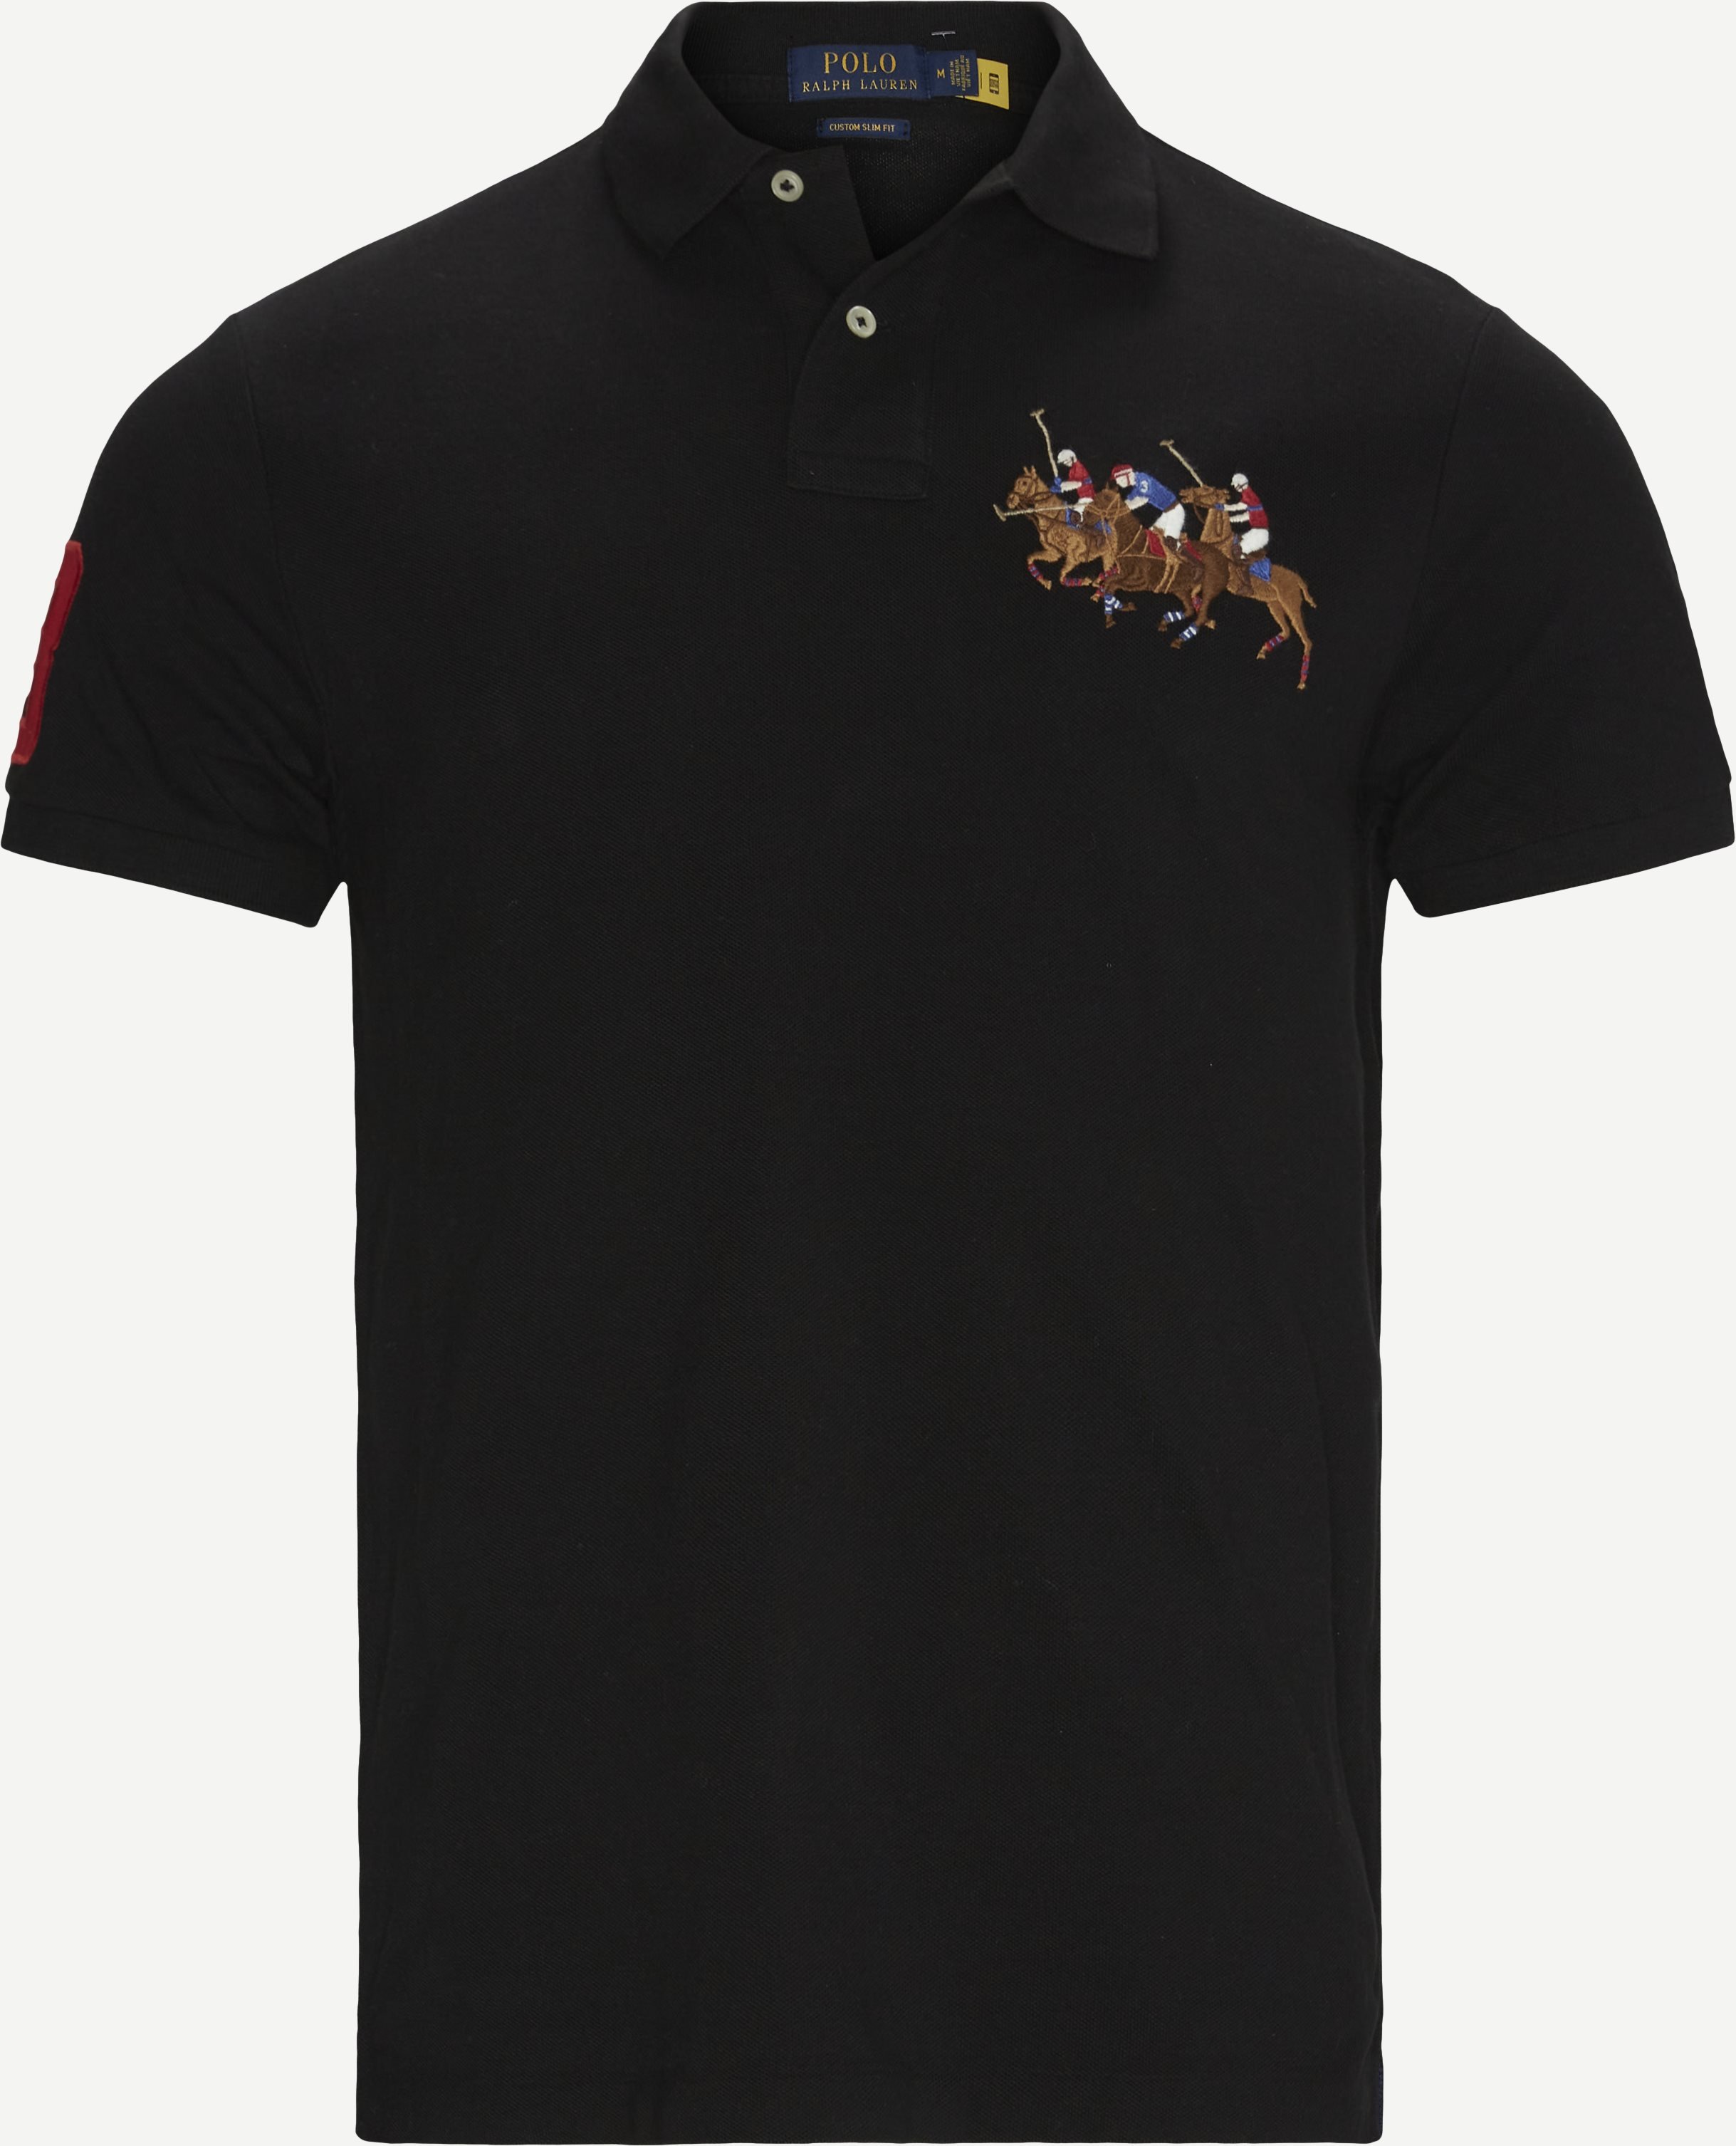 Polo T-shirt - T-shirts - Slim fit - Black